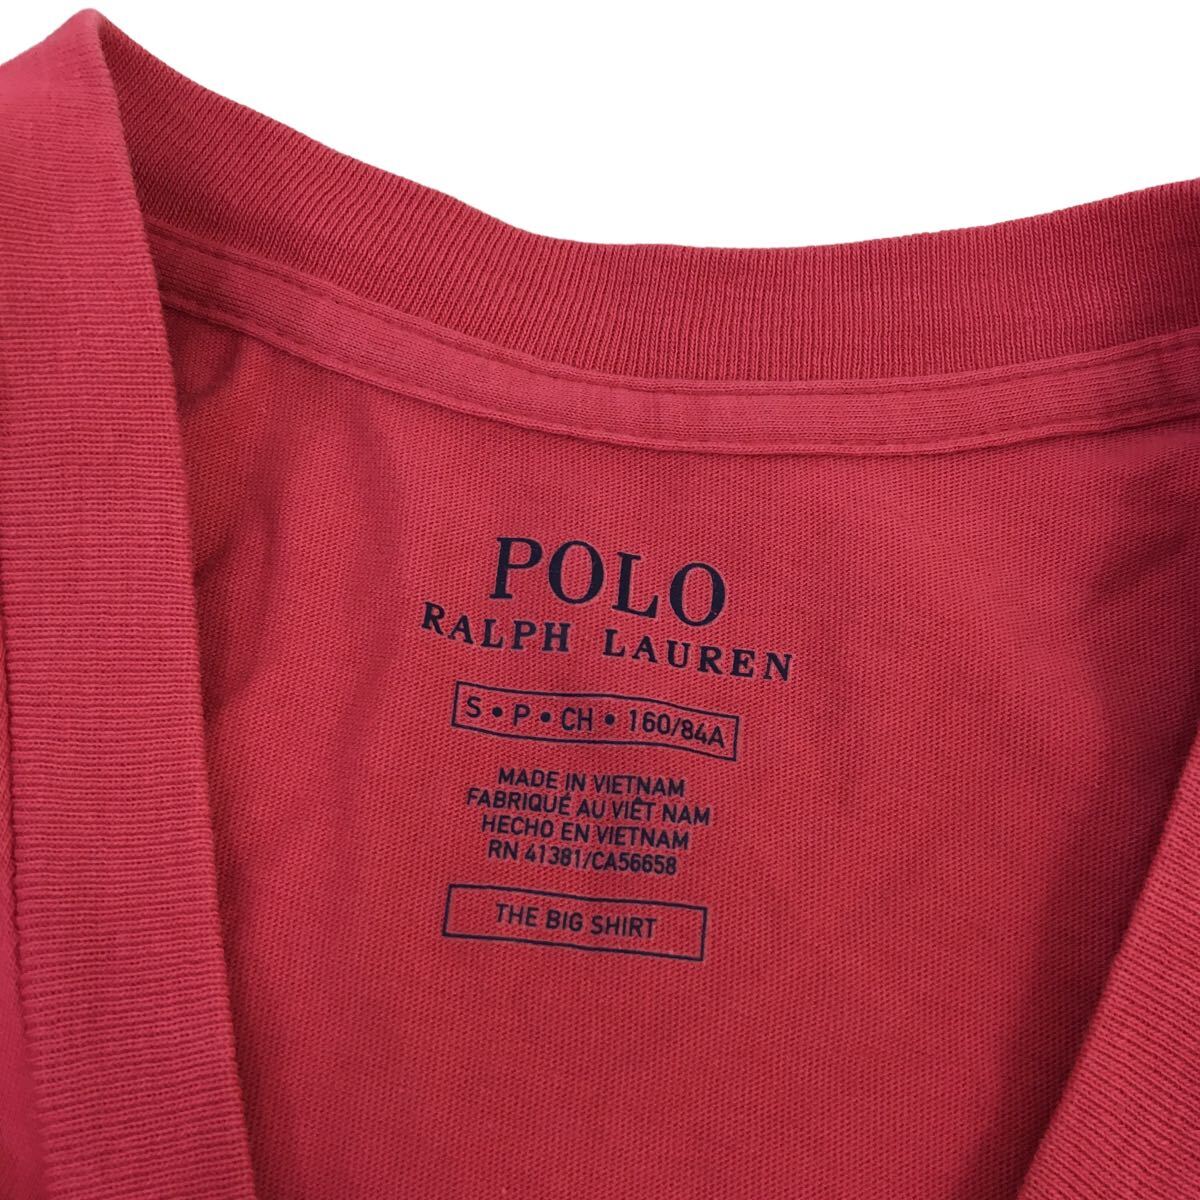 ND177-⑦ POLO RALPH LAUREN ポロラルフローレン 半袖 Tシャツ トップス プルオーバー クルーネック コットン 綿100% レッド系 メンズ S_画像6